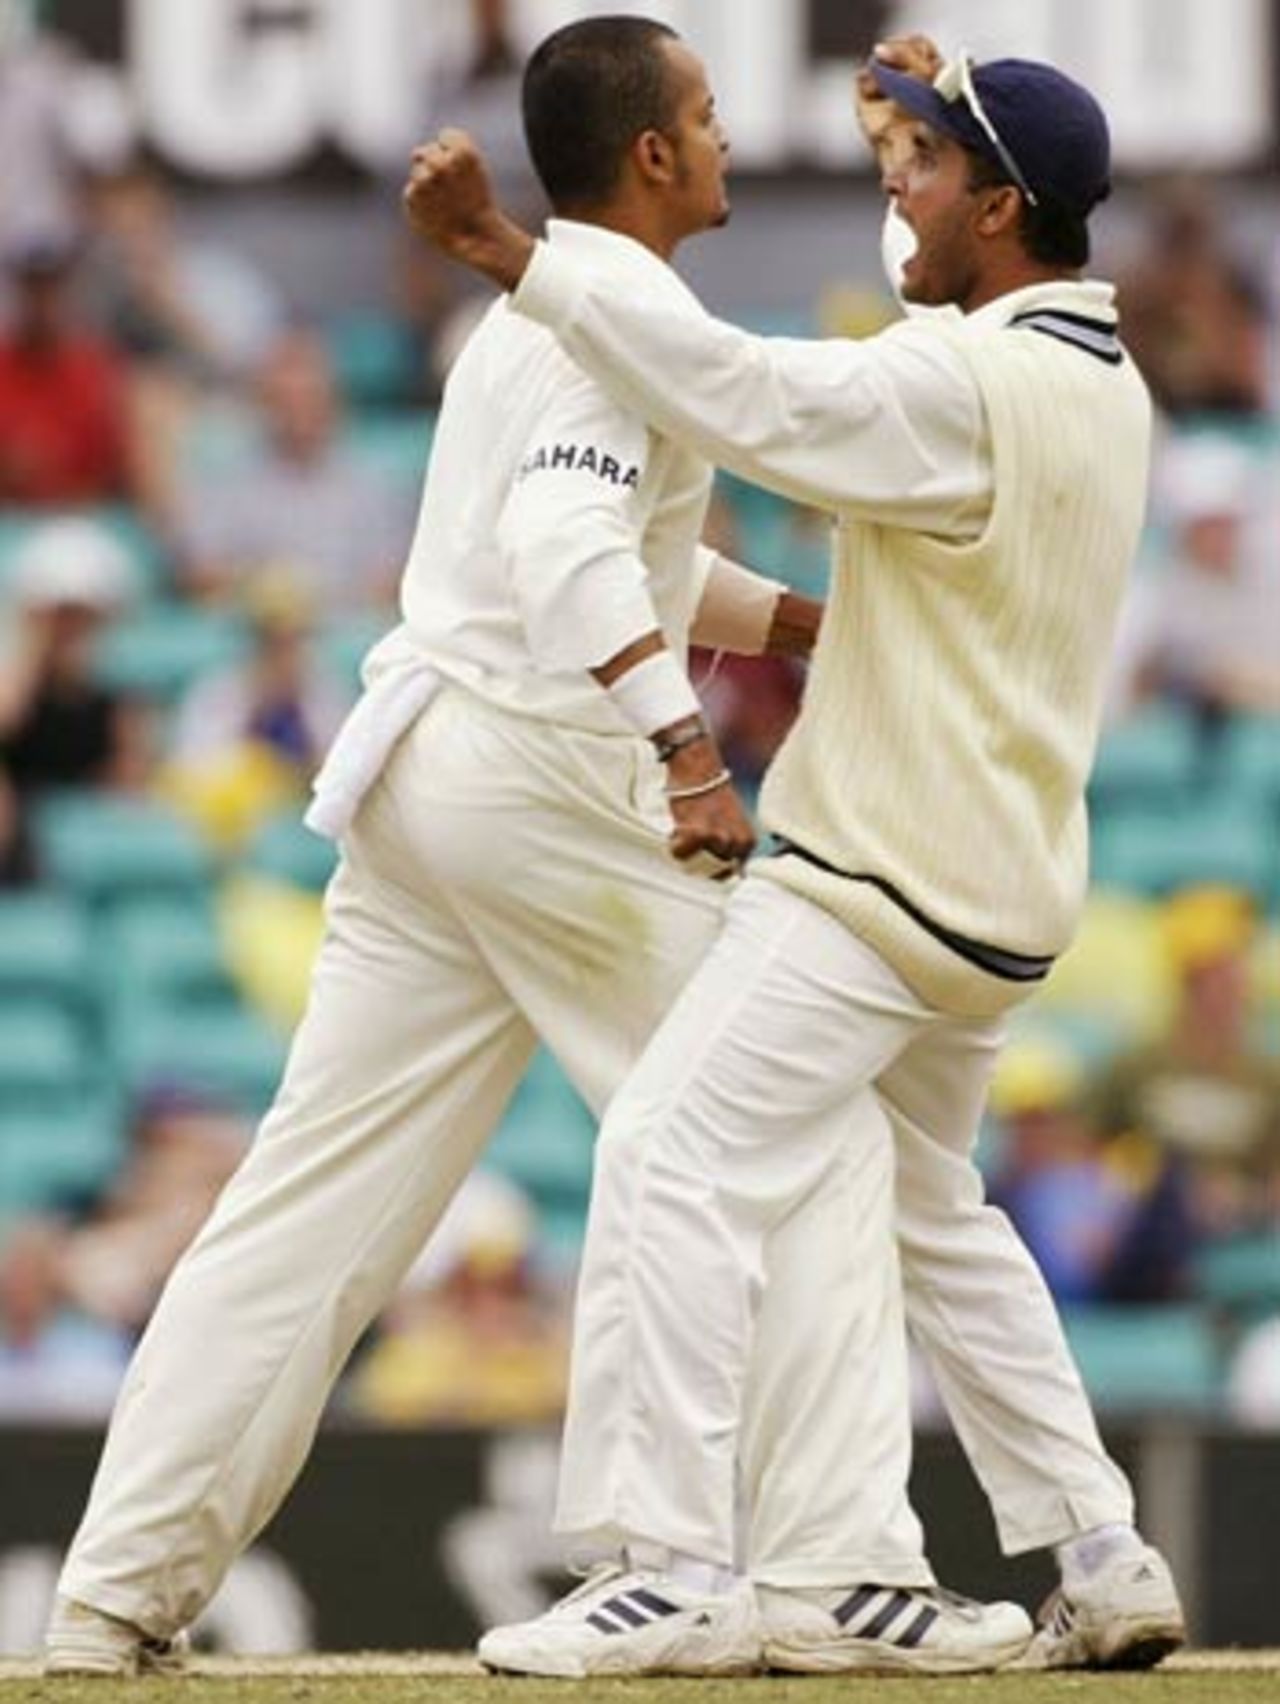 Murali Kartik had sweet revenge, scalping Justin Langer, Australia v India, 4th Test, Sydney, 5th day, January 6, 2004